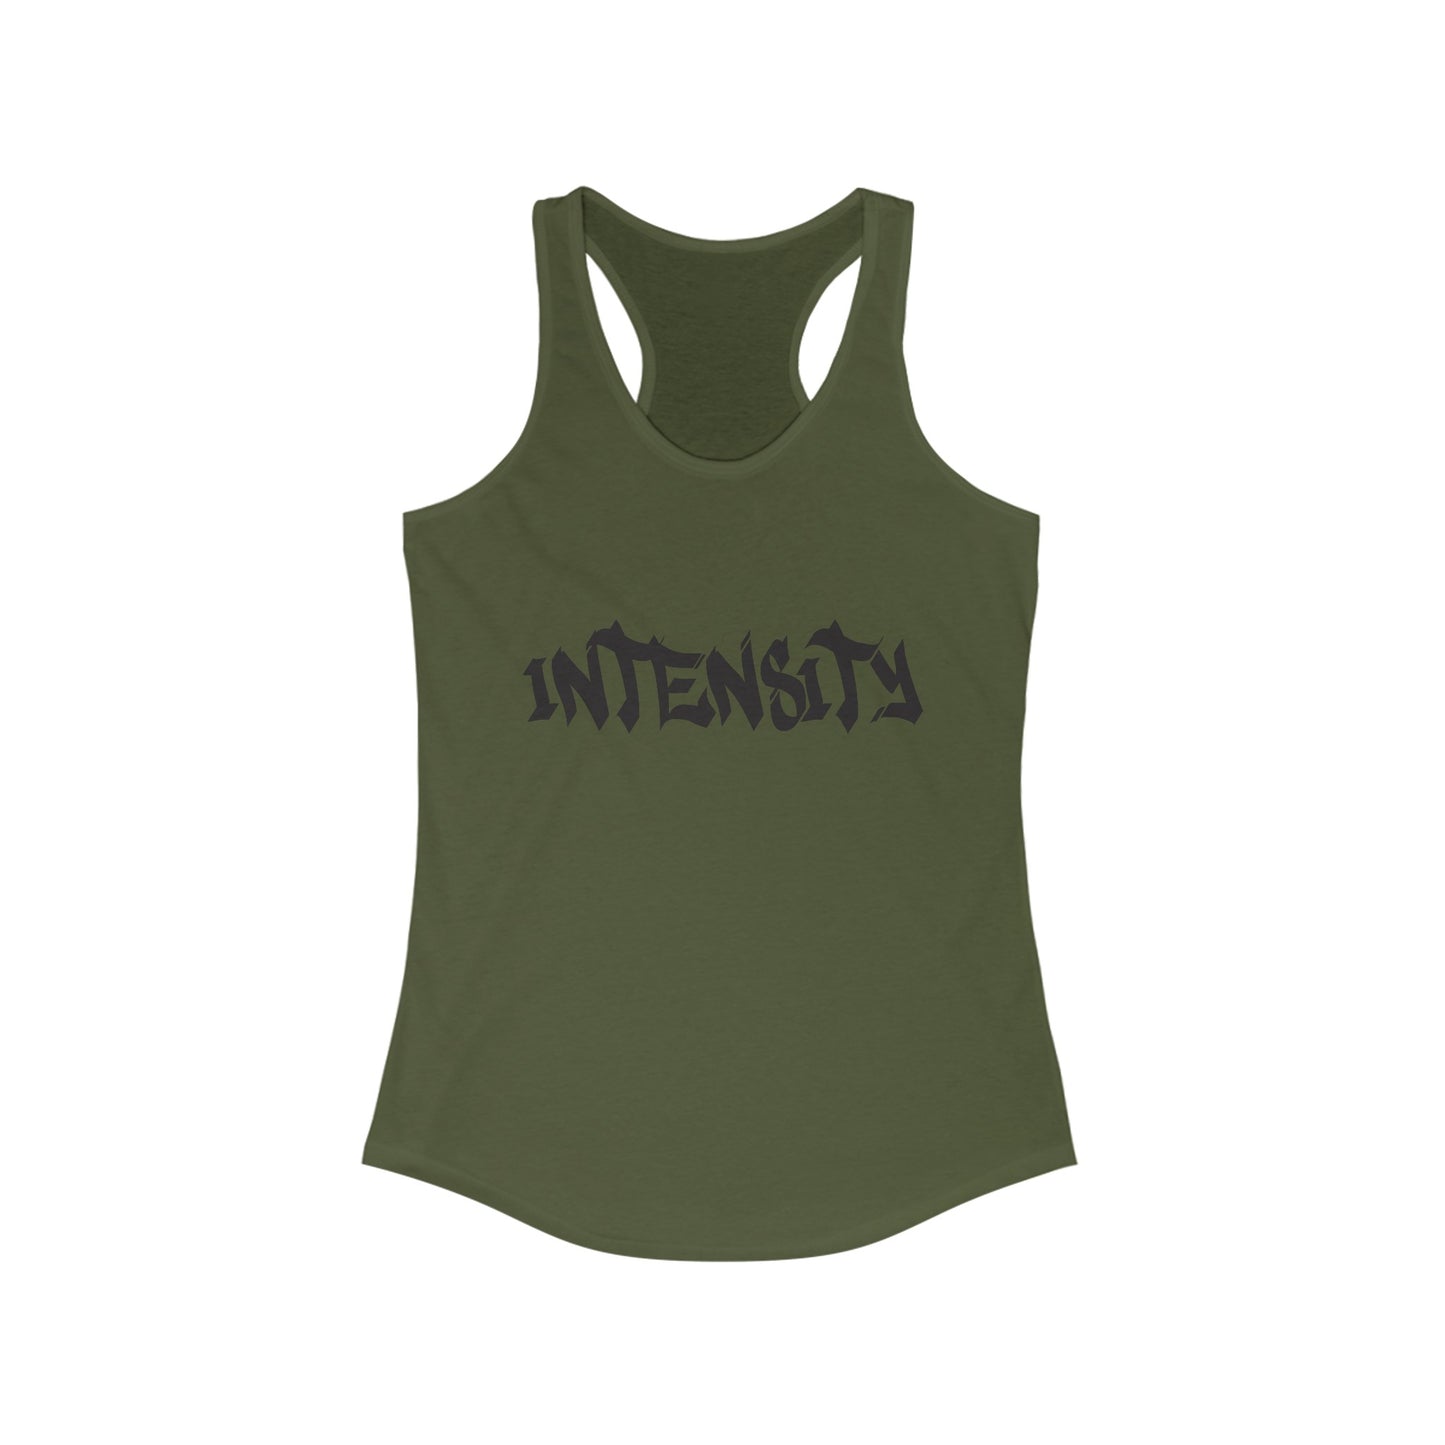 Women's "INTENSITY" Women's Tank Top (Black)